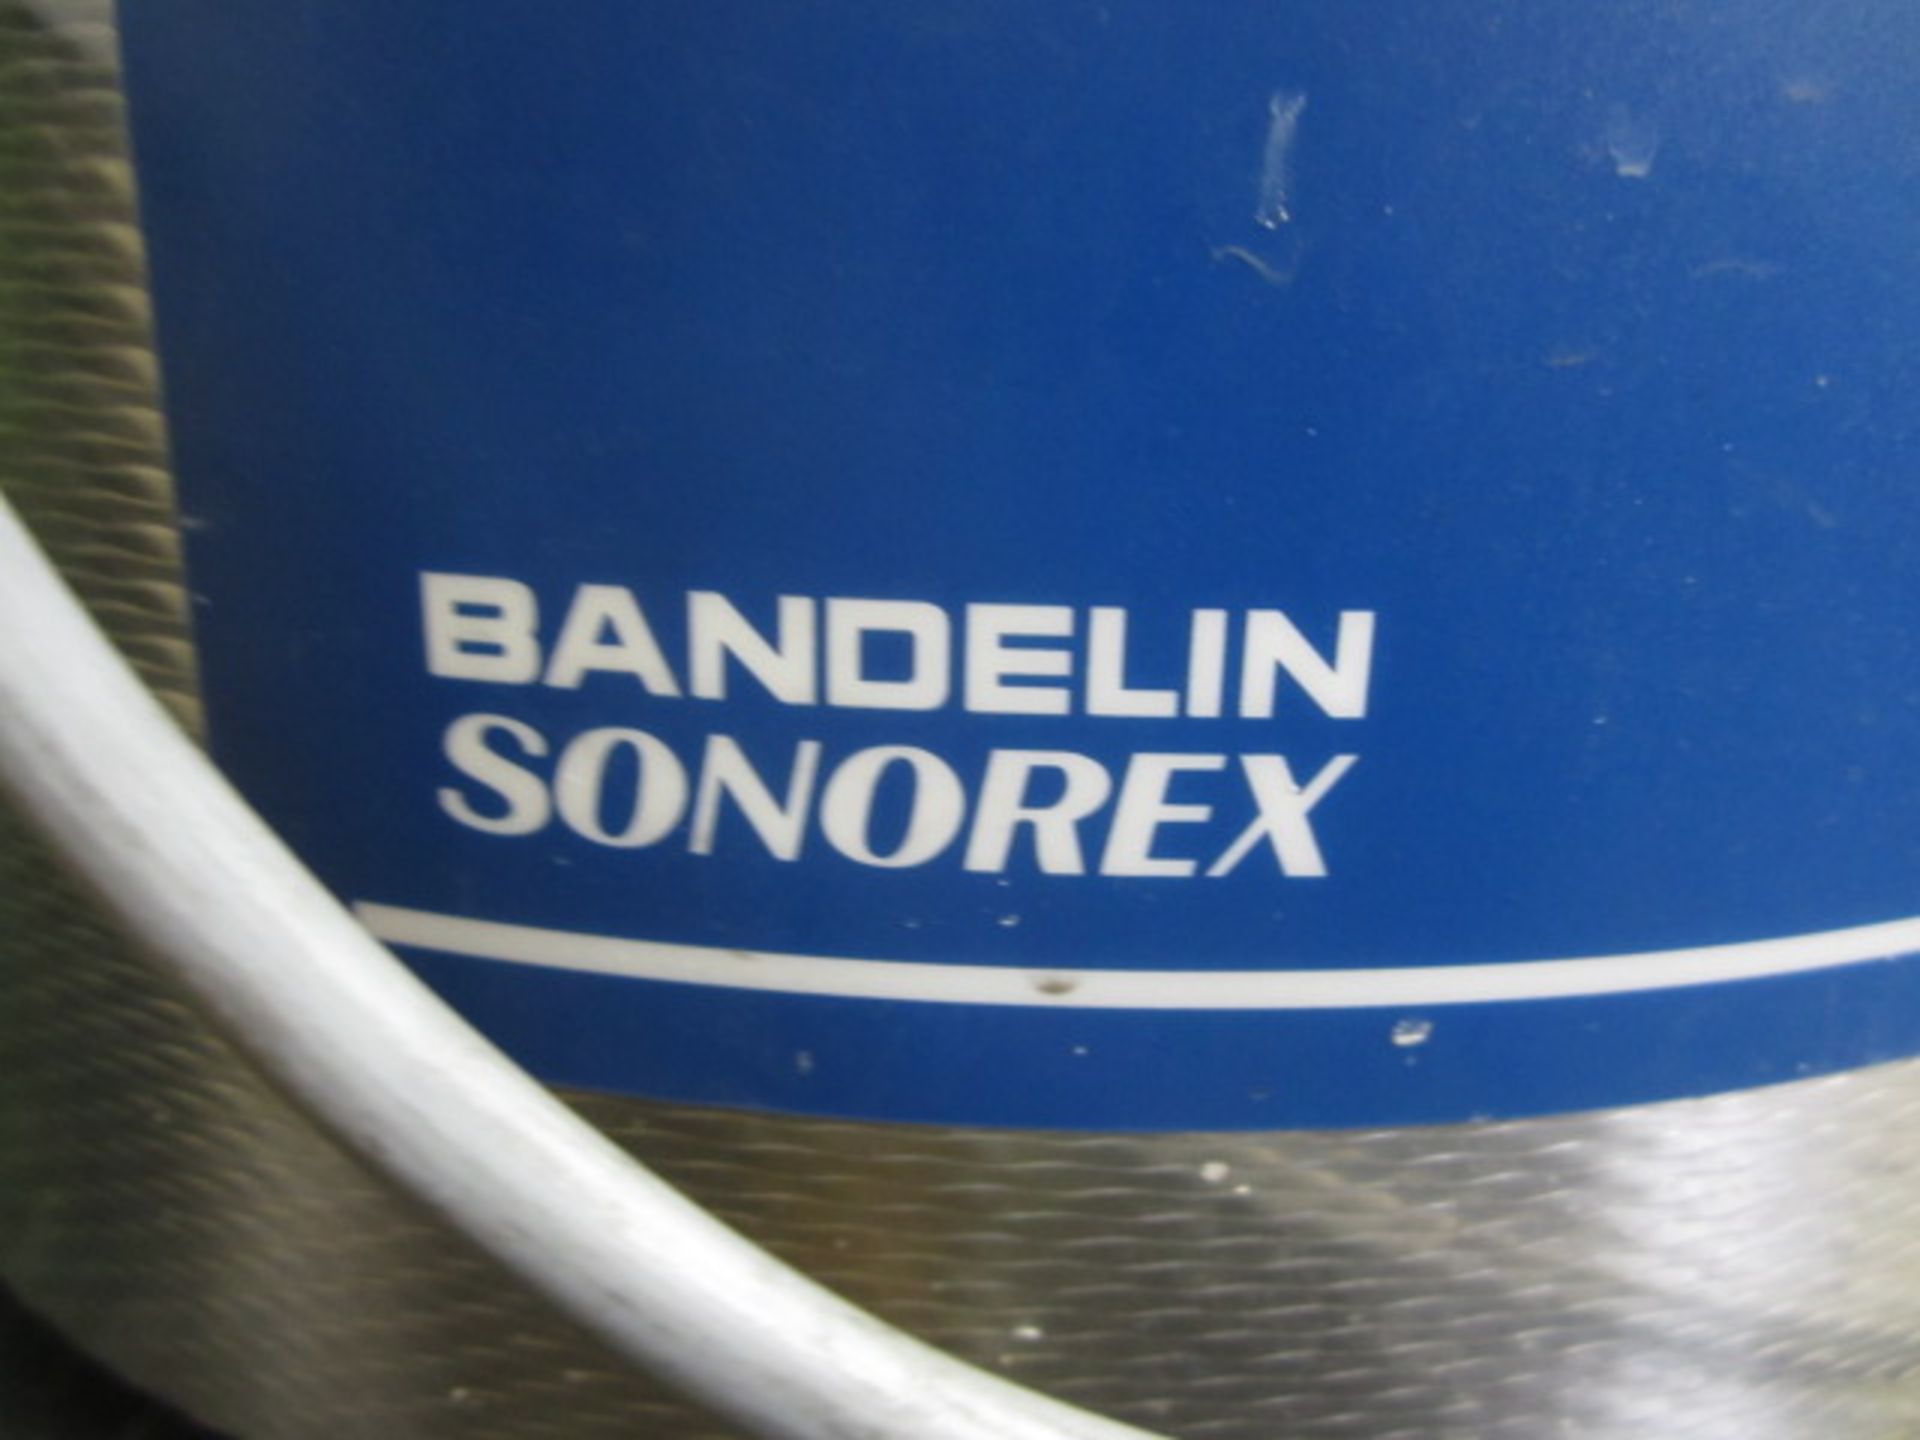 Bandelin Sonorex RK106 ultrasonic bath, serial number GB306.00023.002 - Image 5 of 5